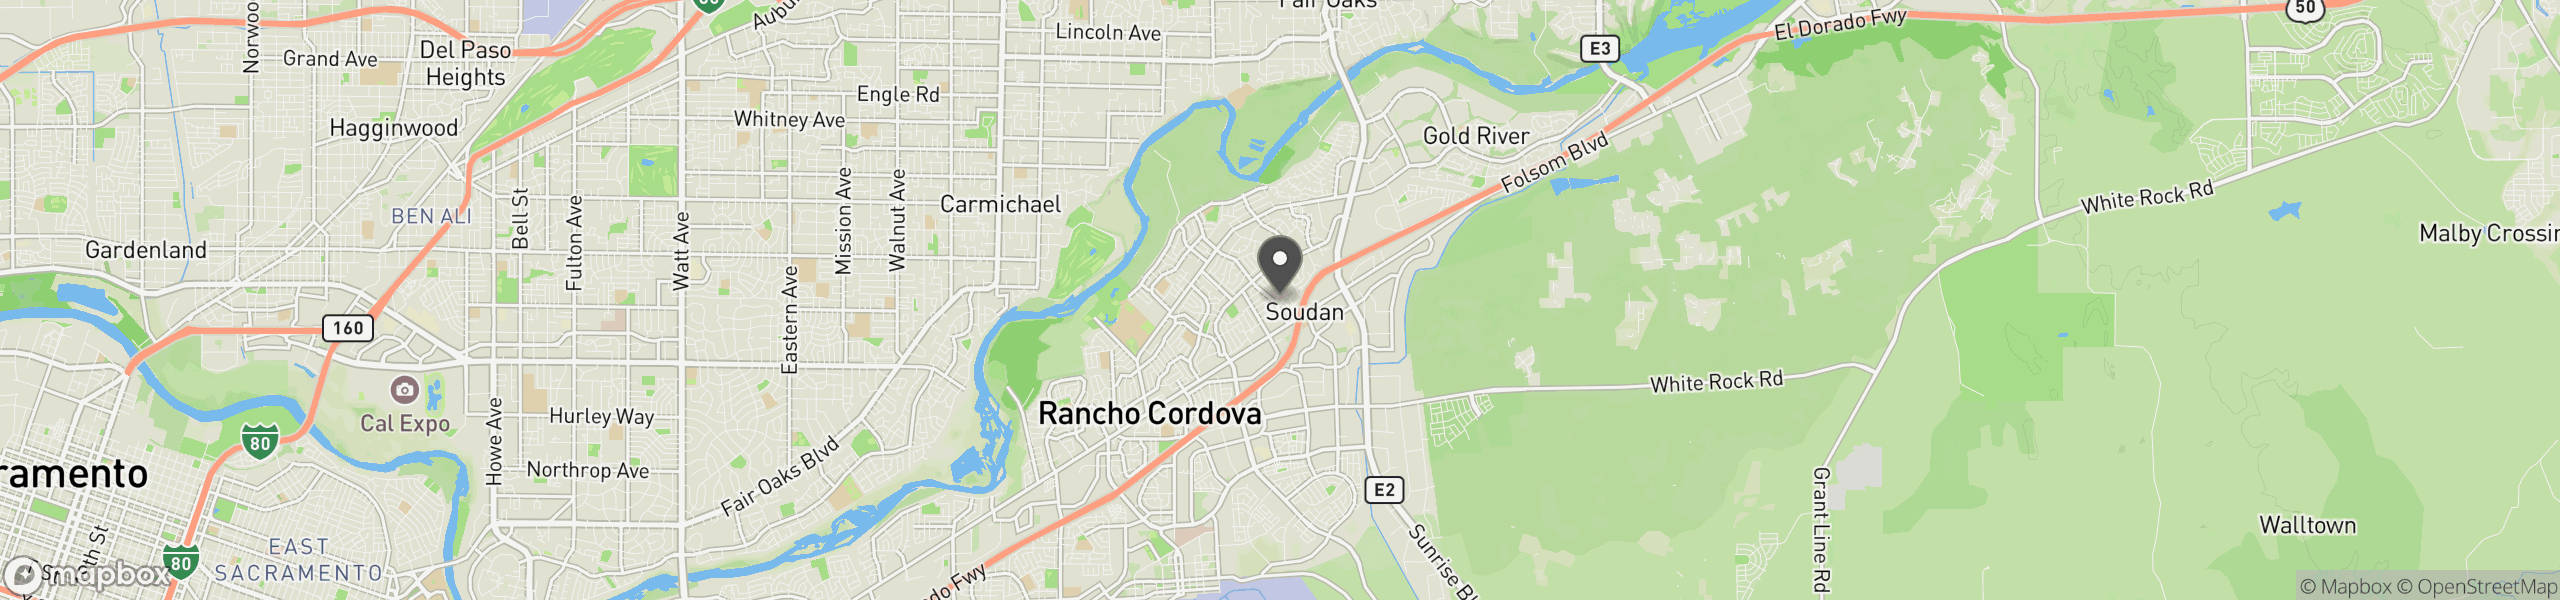 Rancho Cordova, CA